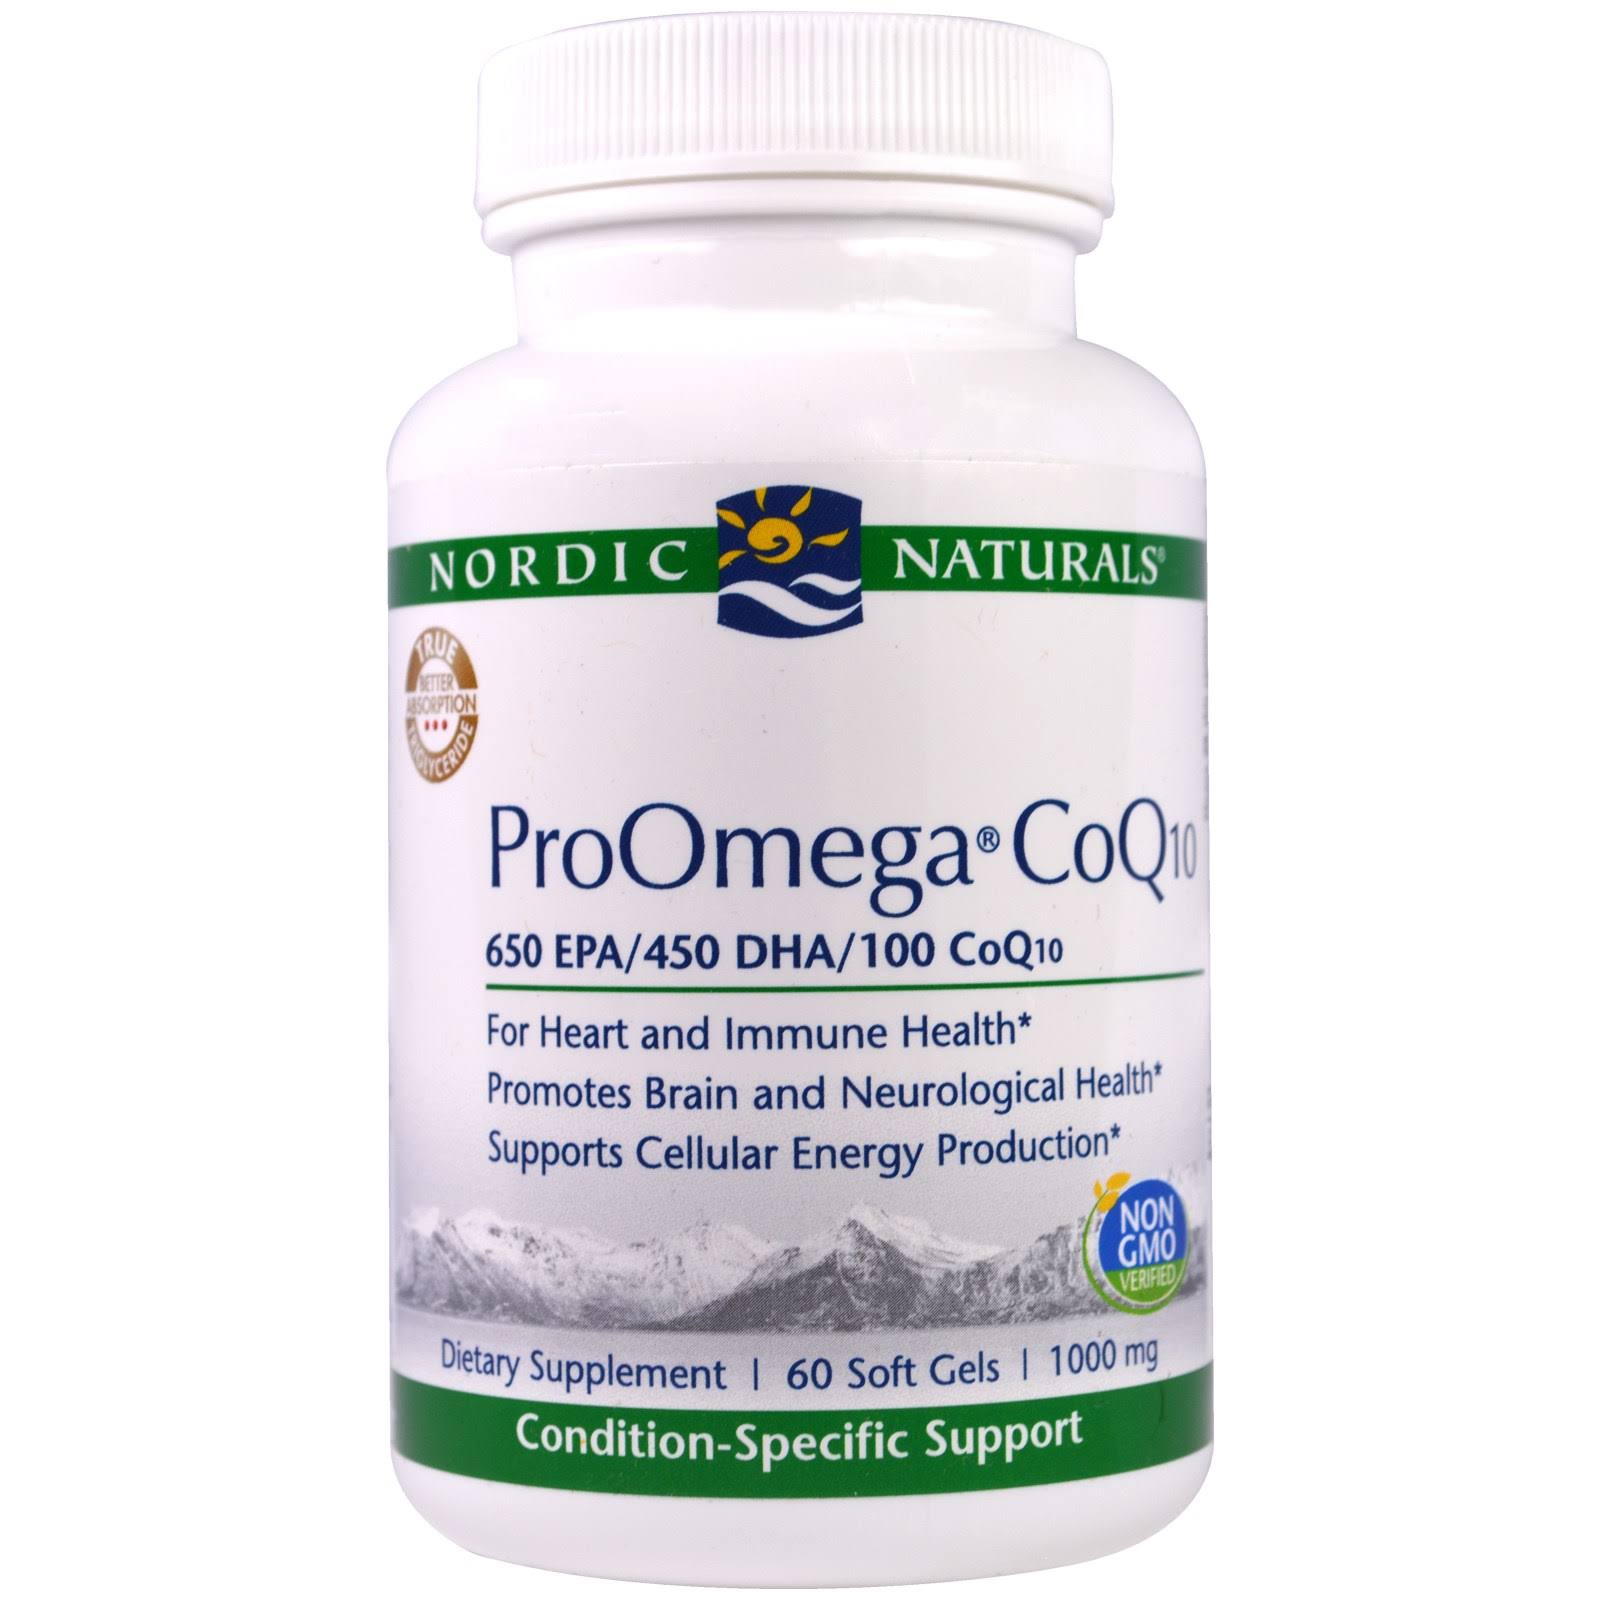 Nordic Naturals Professional, ProOmega CoQ10, 1000 mg, 60 Soft Gels